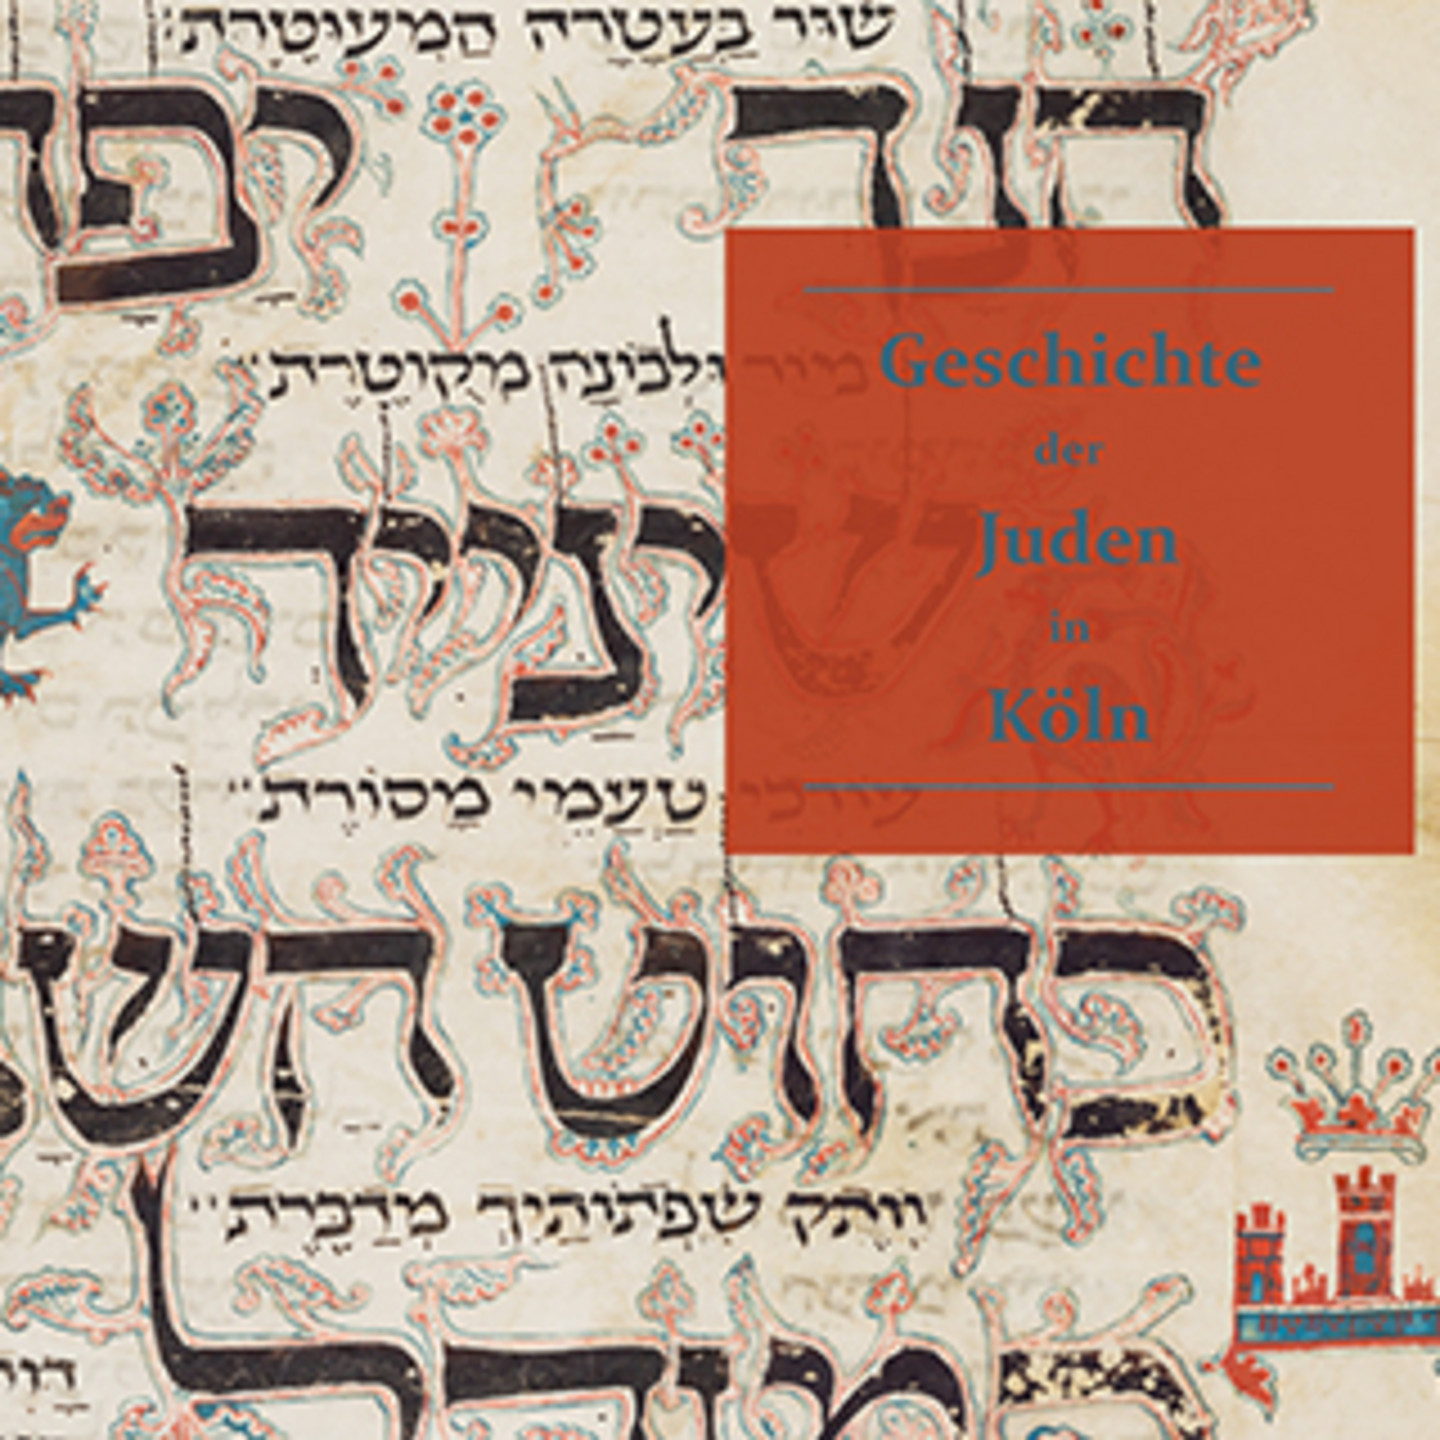 Bild mit der Schrift "Geschichte der Juden in Köln". Im Hintergrund sind historische Symbole abgebildet.